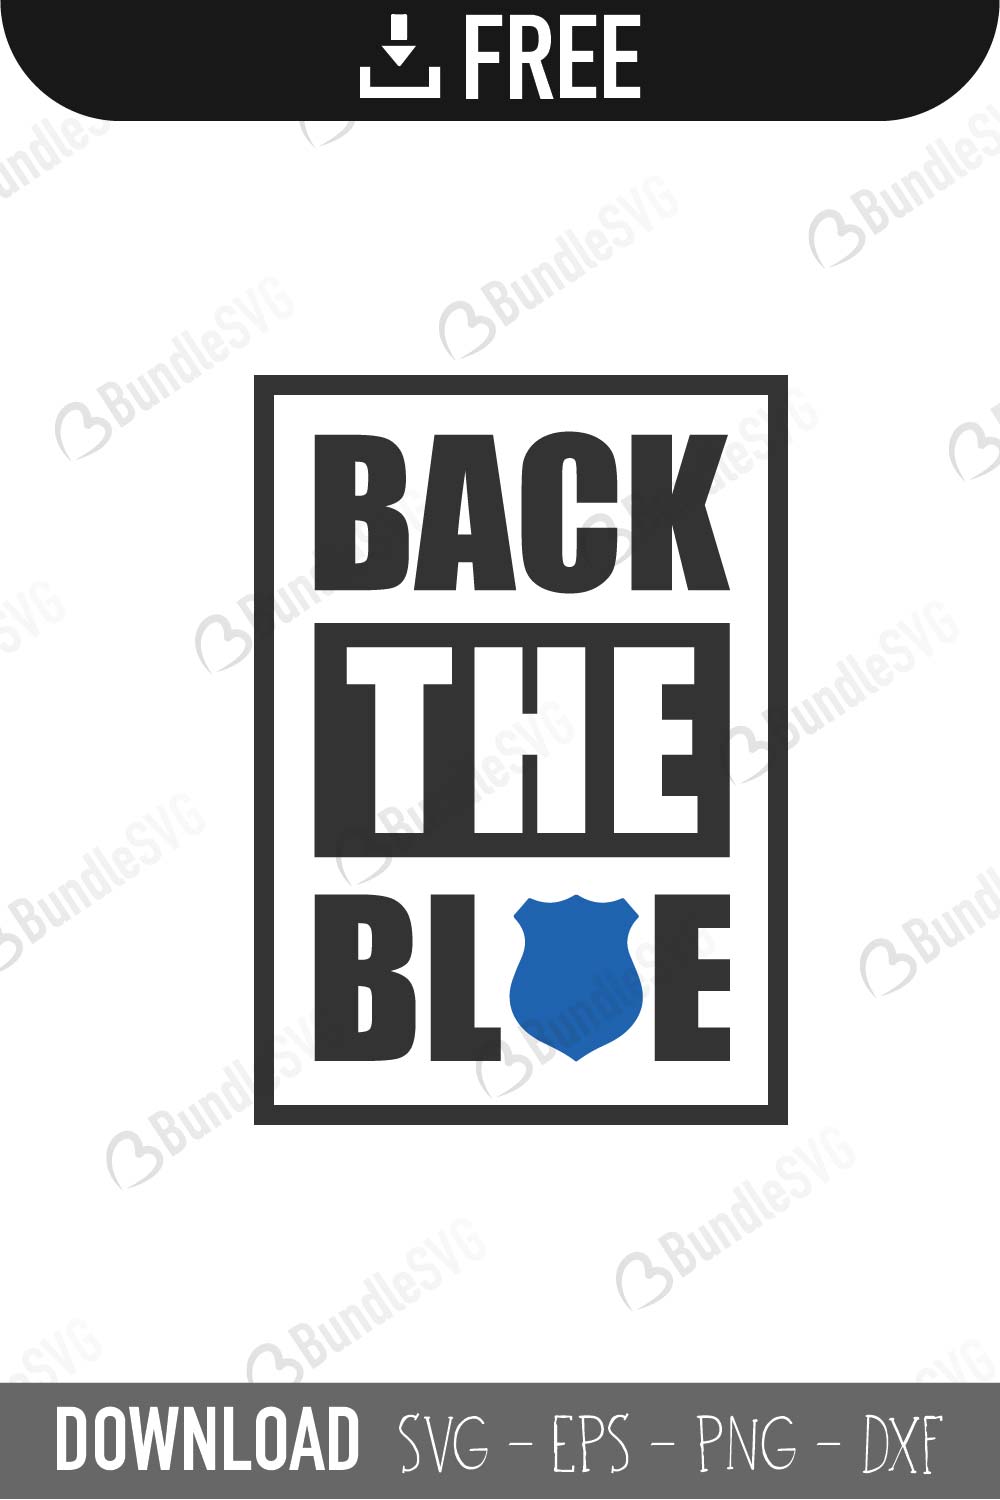 Download Back The Blue Svg Cut Files Free Download Bundlesvg